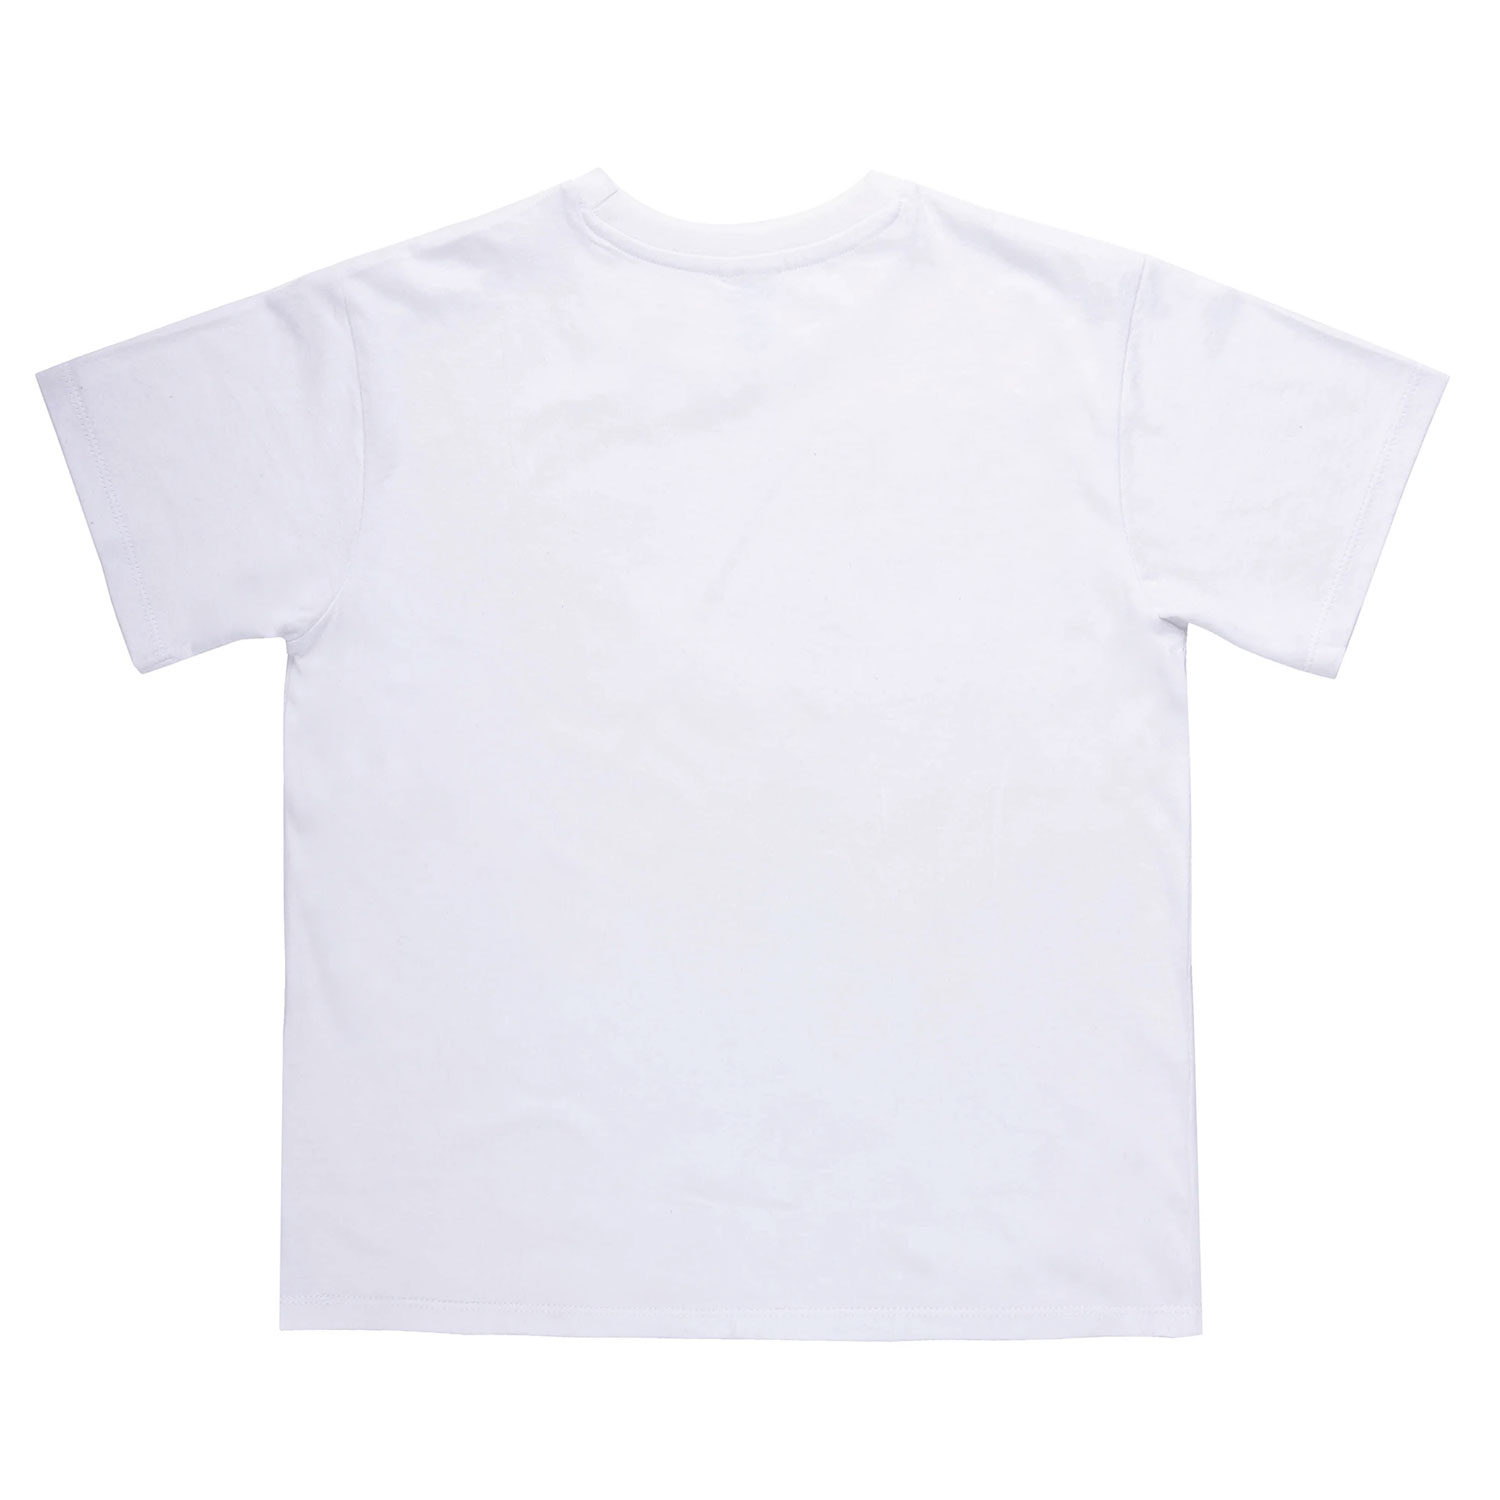 4 Pack Boy's Cotton Round Neck T-Shirt